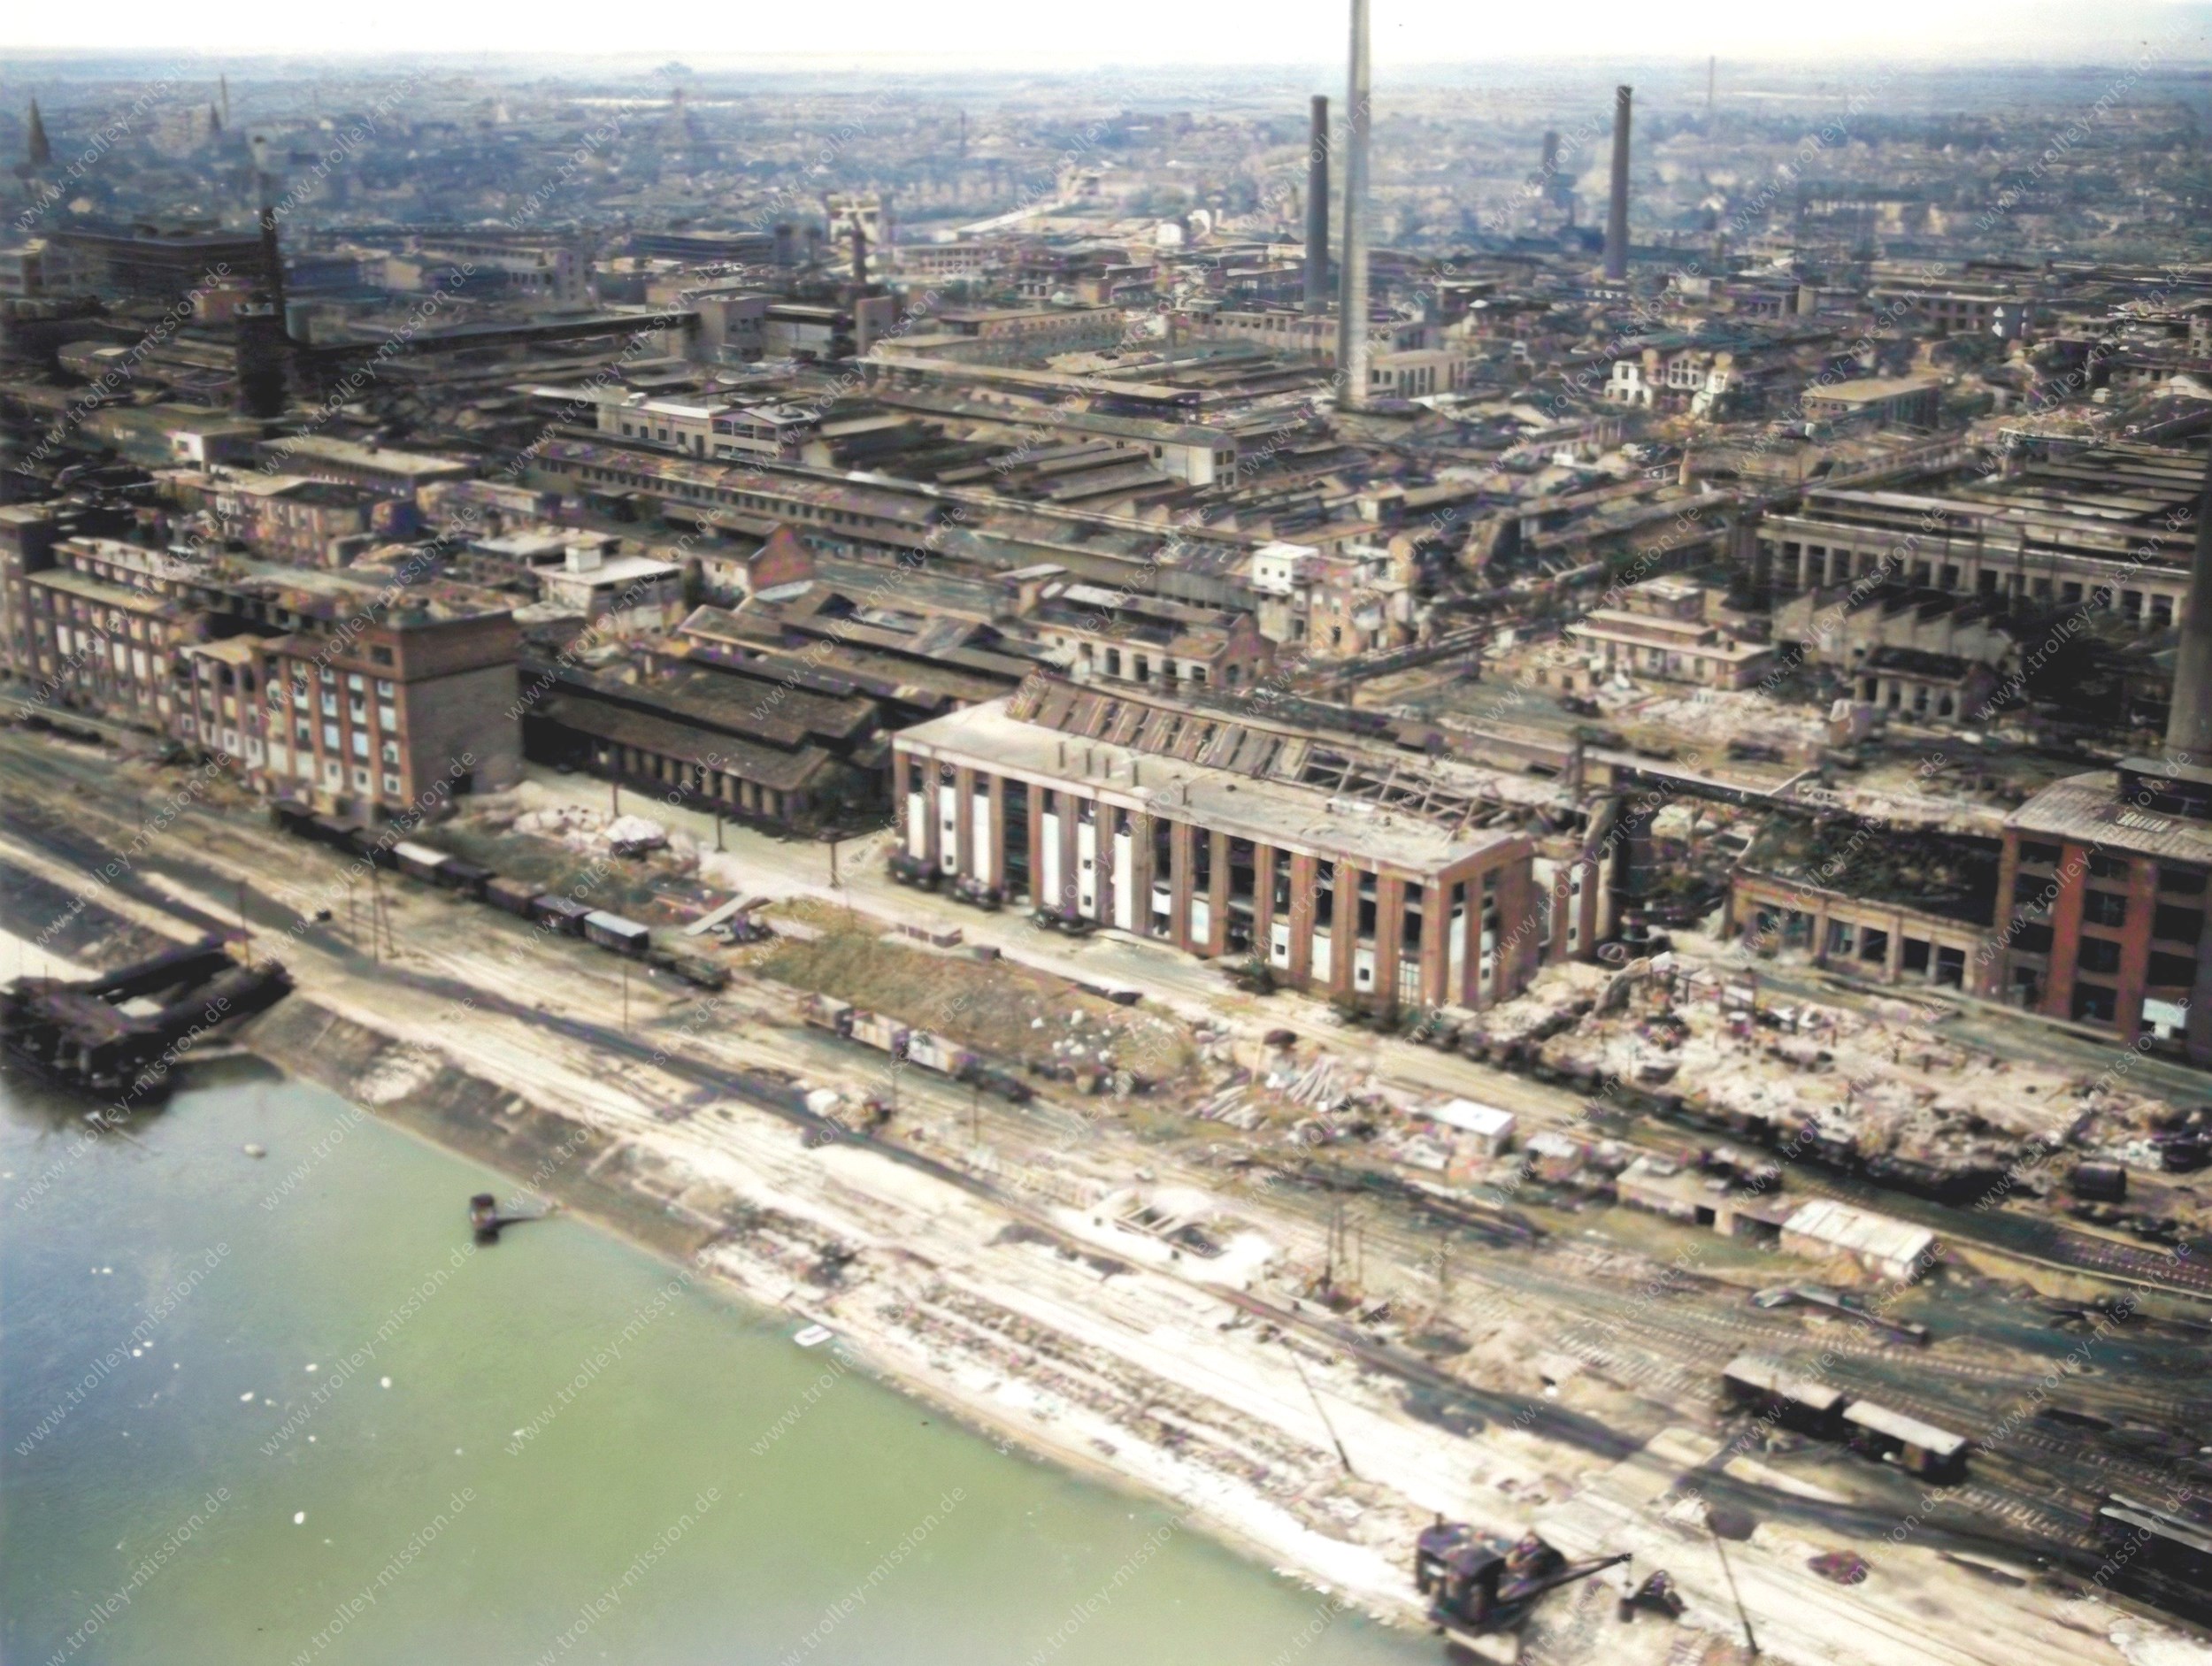 Das Luftbild zeigt das im Zweiten Weltkrieg weitgehend zerstörte Werksgelände der BASF AG bzw. der I. G. Farbenindustrie AG in Ludwigshafen am Rhein. Im Detail sind die Rheinuferstraße, Ecke Chlorstraße zu erkennen.